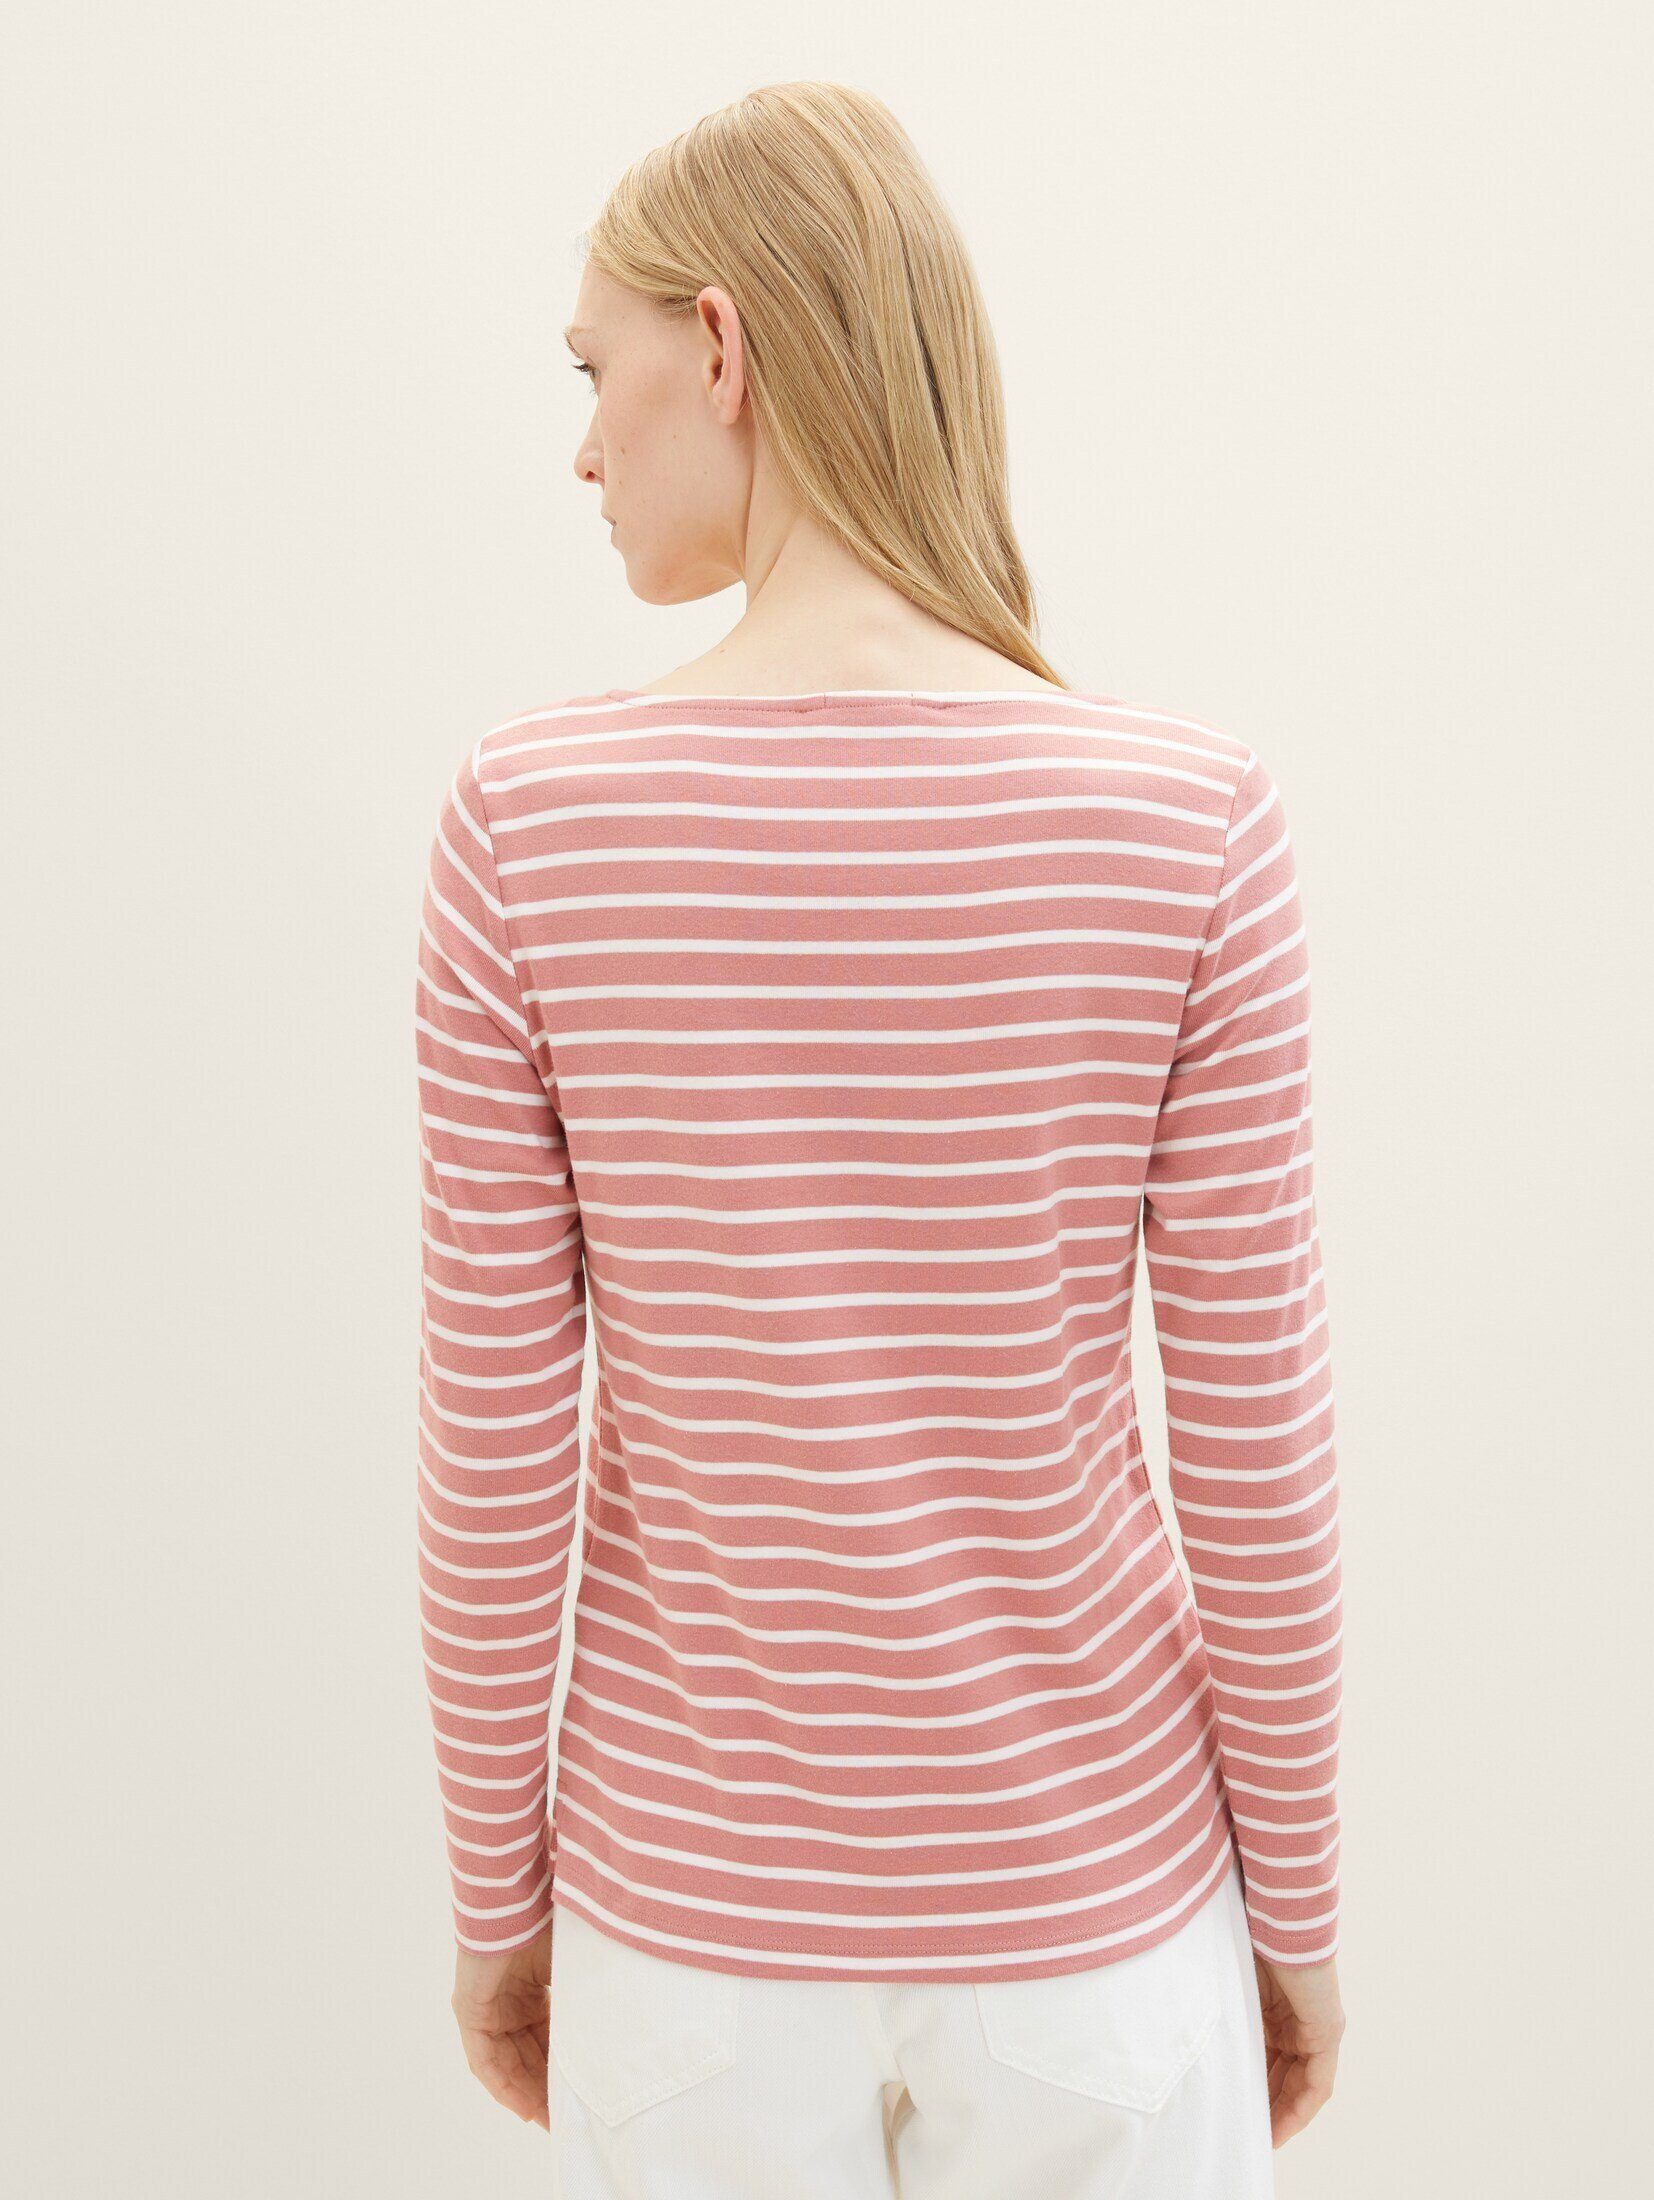 TOM TAILOR T-Shirt Langarmshirt Streifenmuster offwhite mit rose stripe